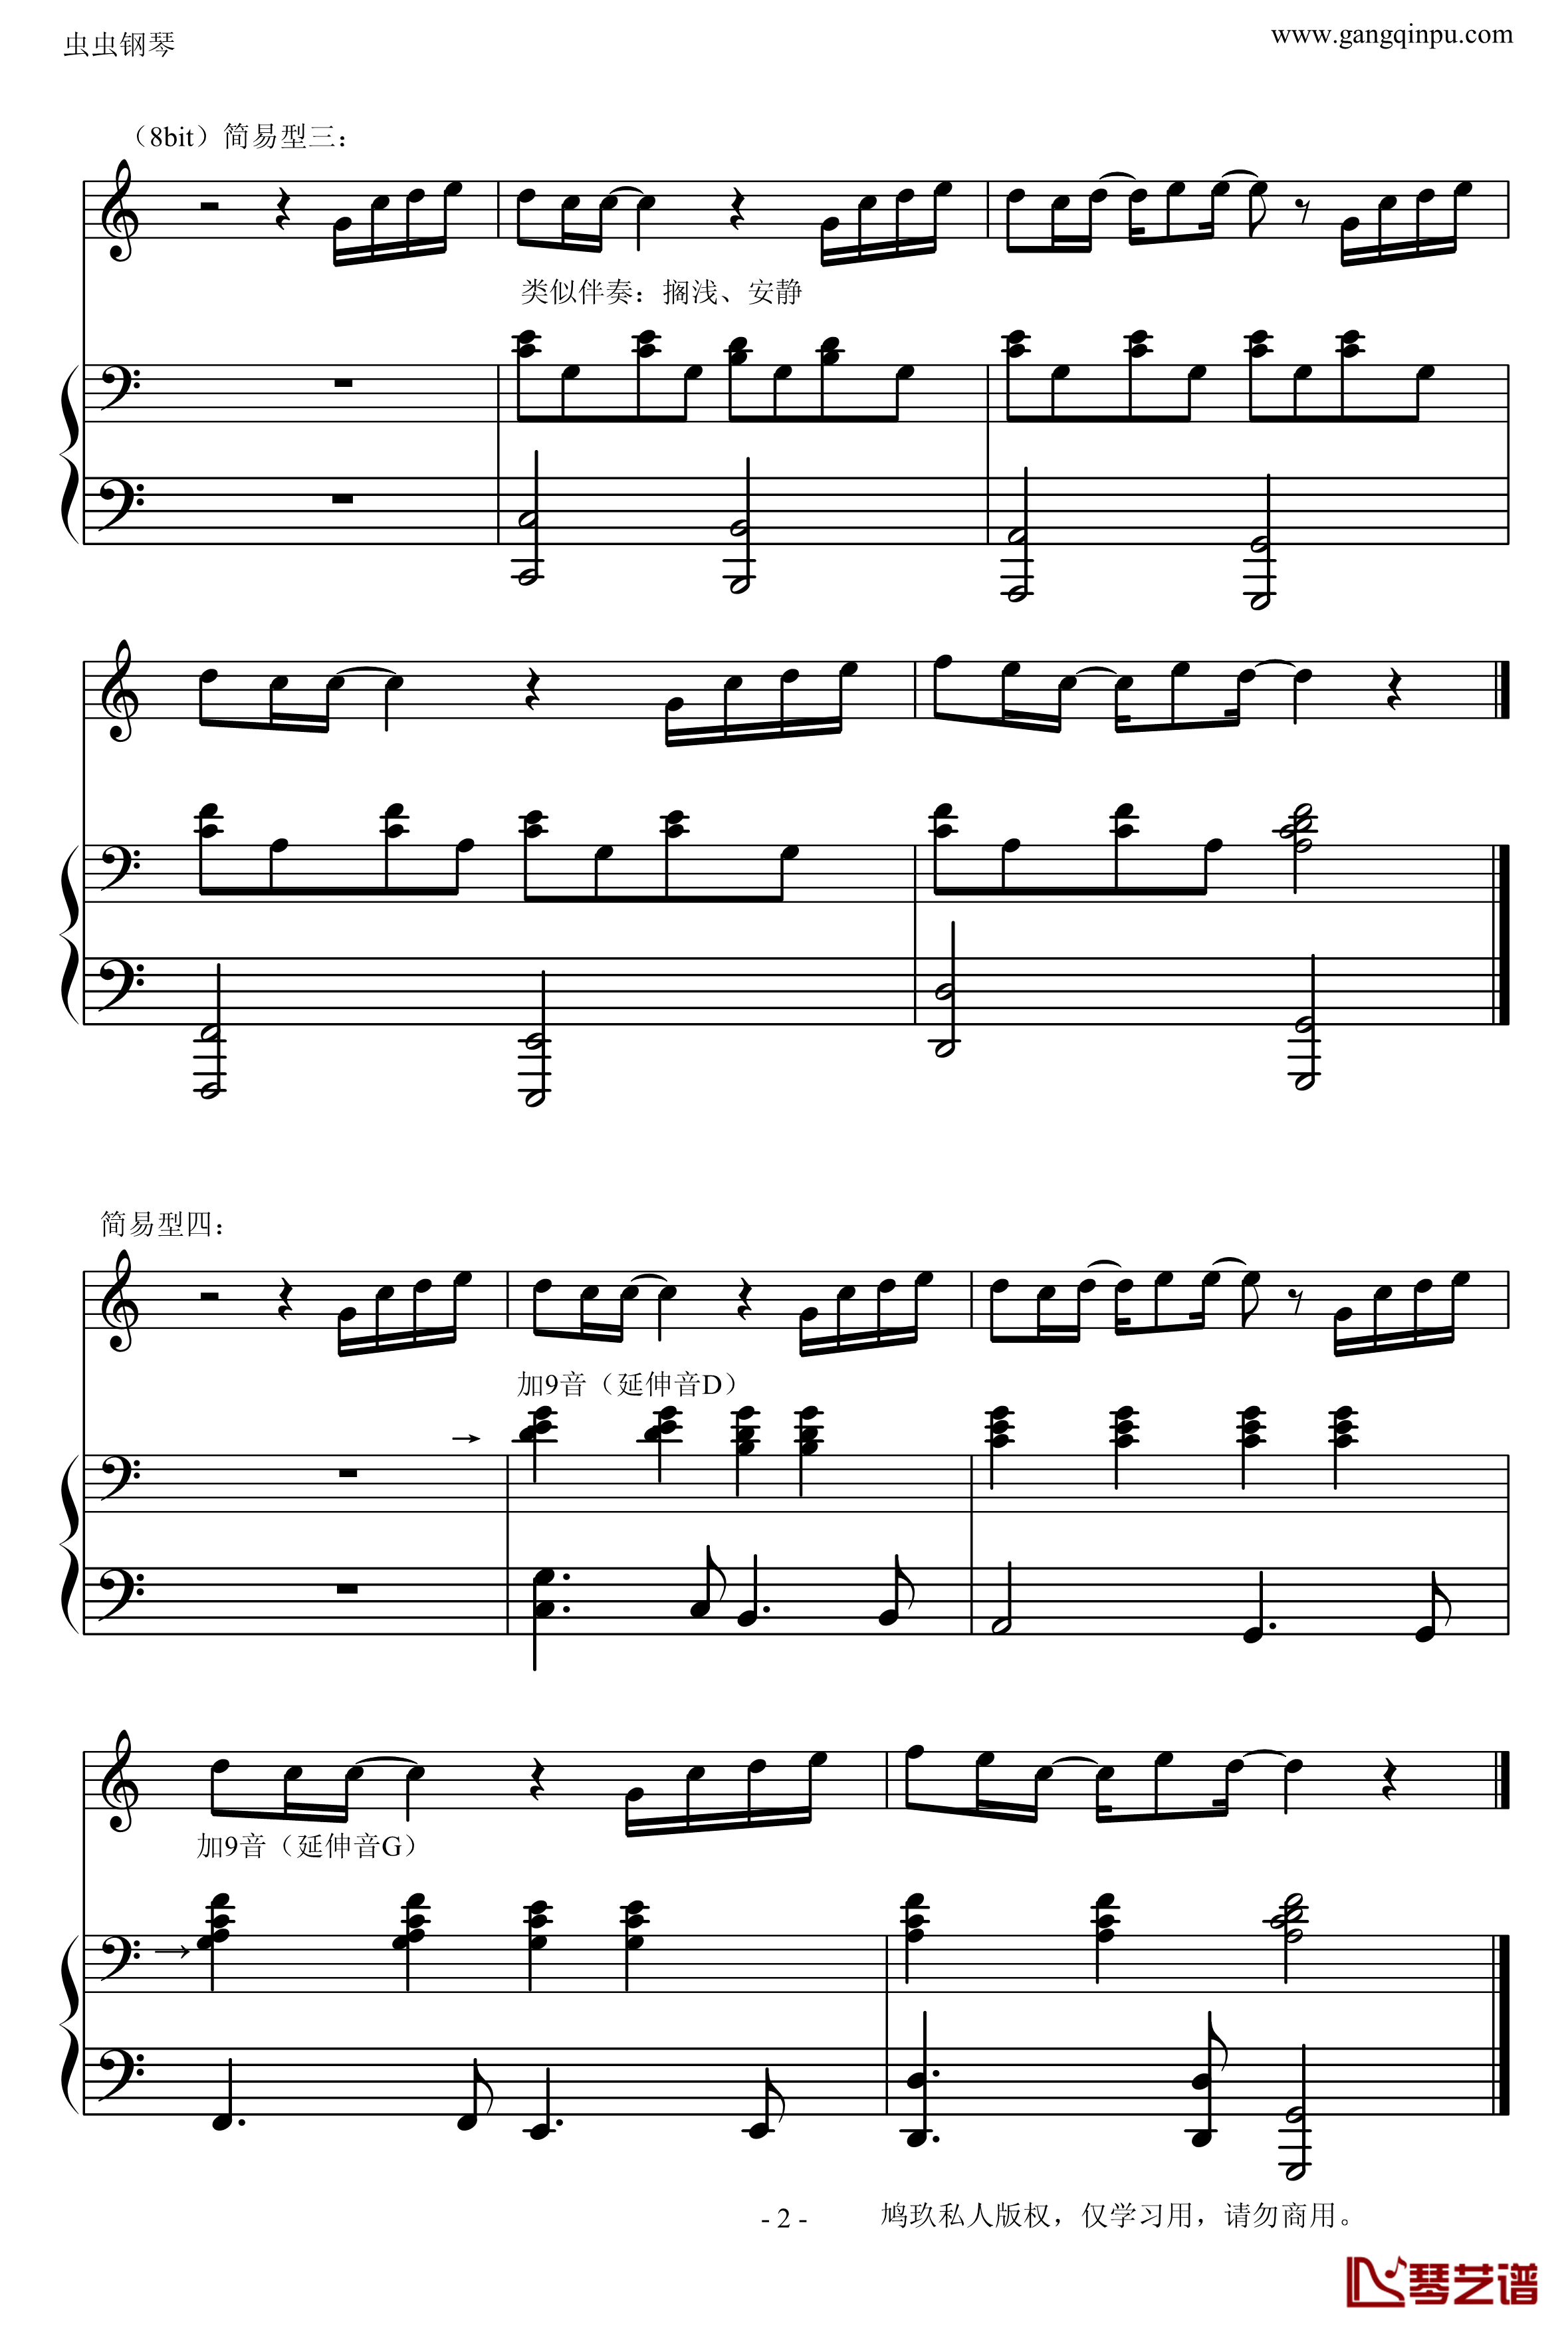 菊次郎的夏天钢琴谱-改编的-示范钢琴弹唱的常见伴奏型久石让2